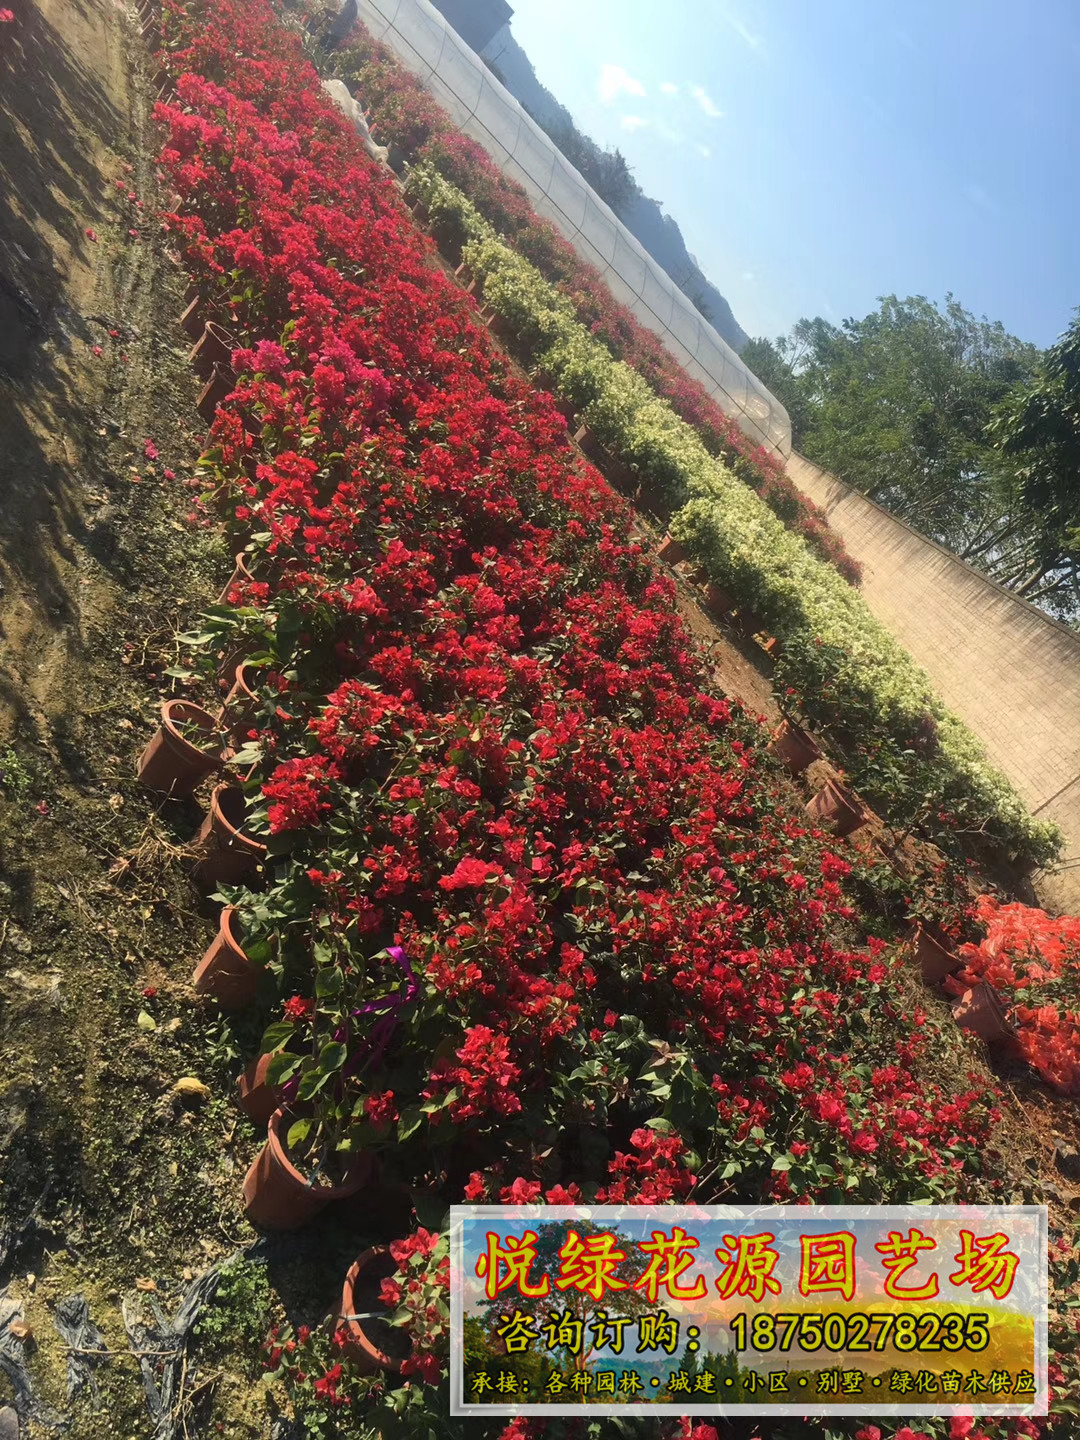 三角梅福建漳州基地种植供应三角梅 自产自销 品种多样 颜色可选